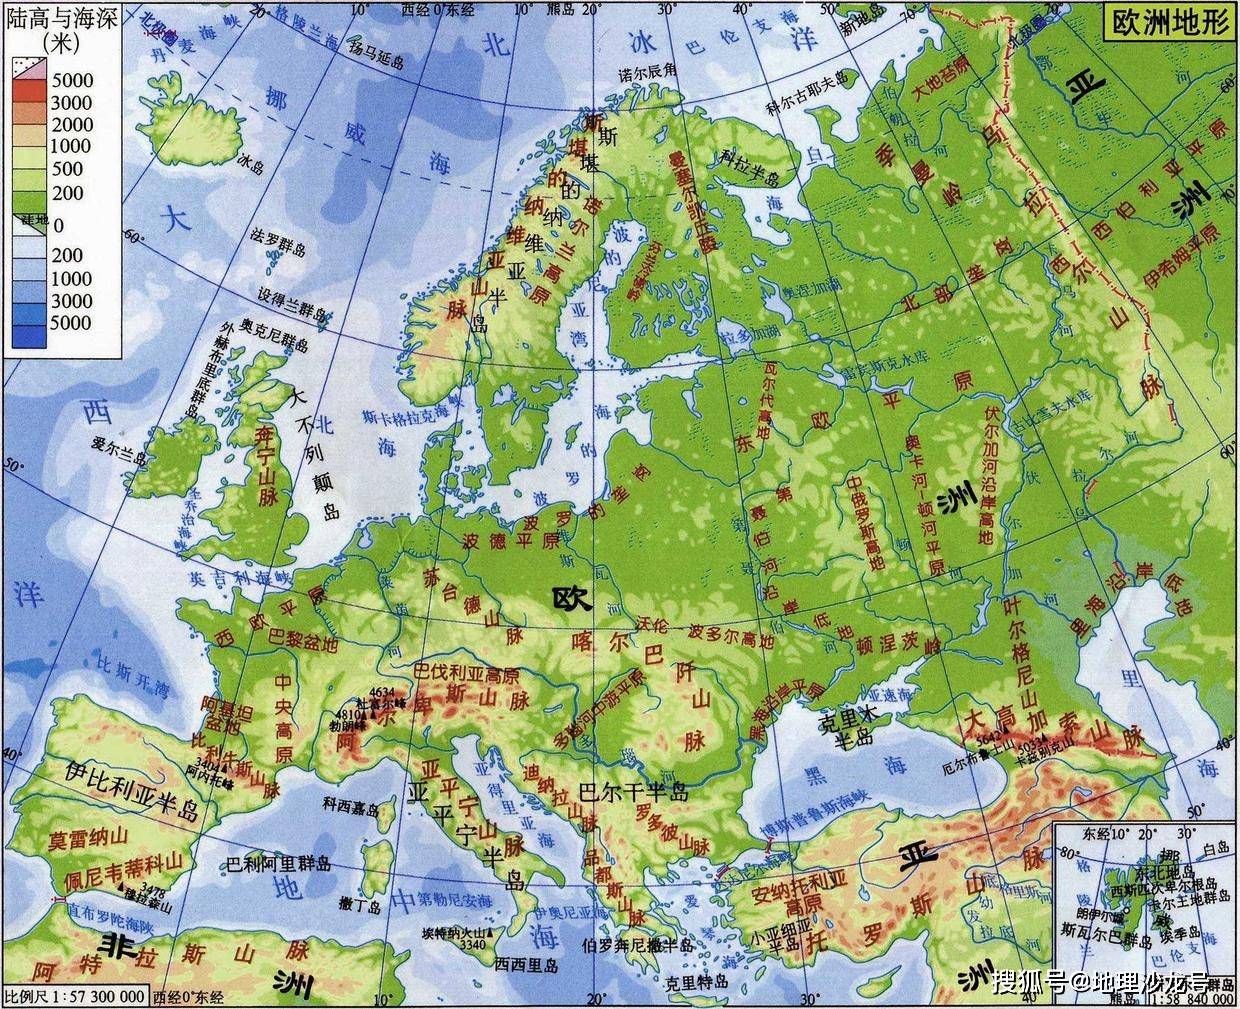 明明是连成整体的一个平原,为什么分西欧平原和波德平原两部分?